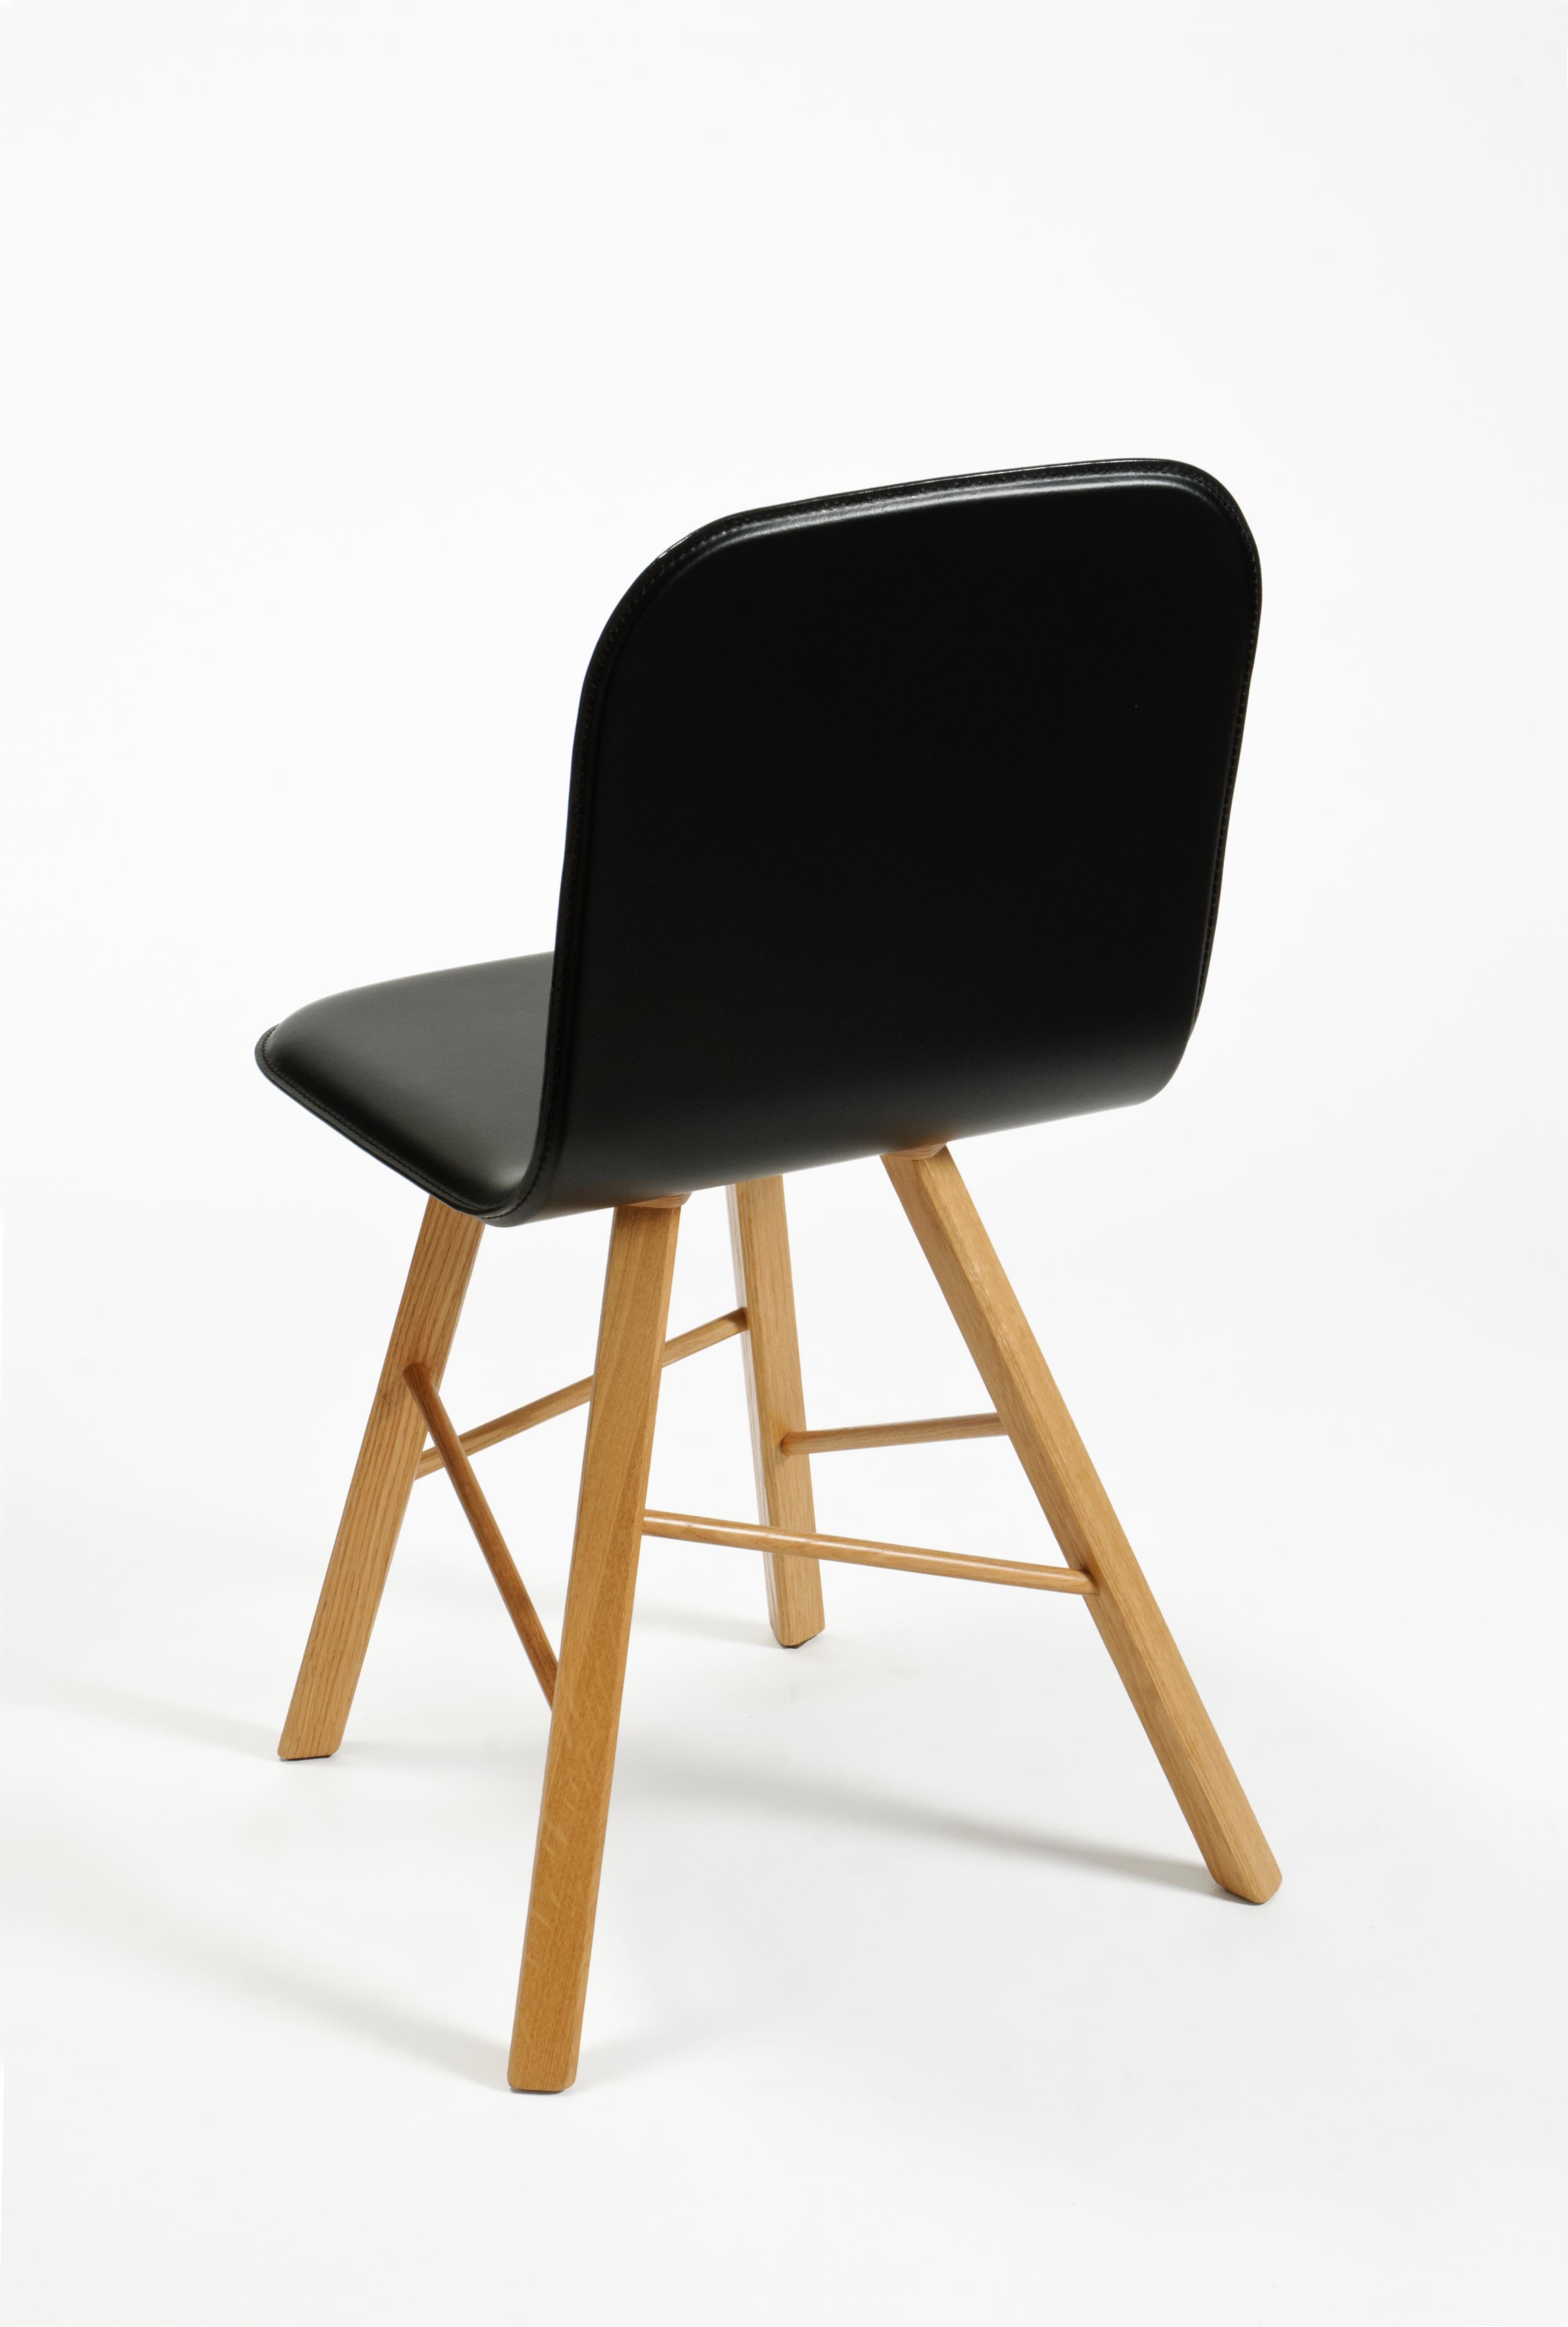 Essentieller und eleganter Stuhl mit einer gebogenen Sperrholzschale und vier ikonischen Beinen mit dreieckiger Form aus massiver Eiche, die durch quer verlaufende Holzstangen verbunden sind.
Die Schale ist mit Naturleder gepolstert, das auch in